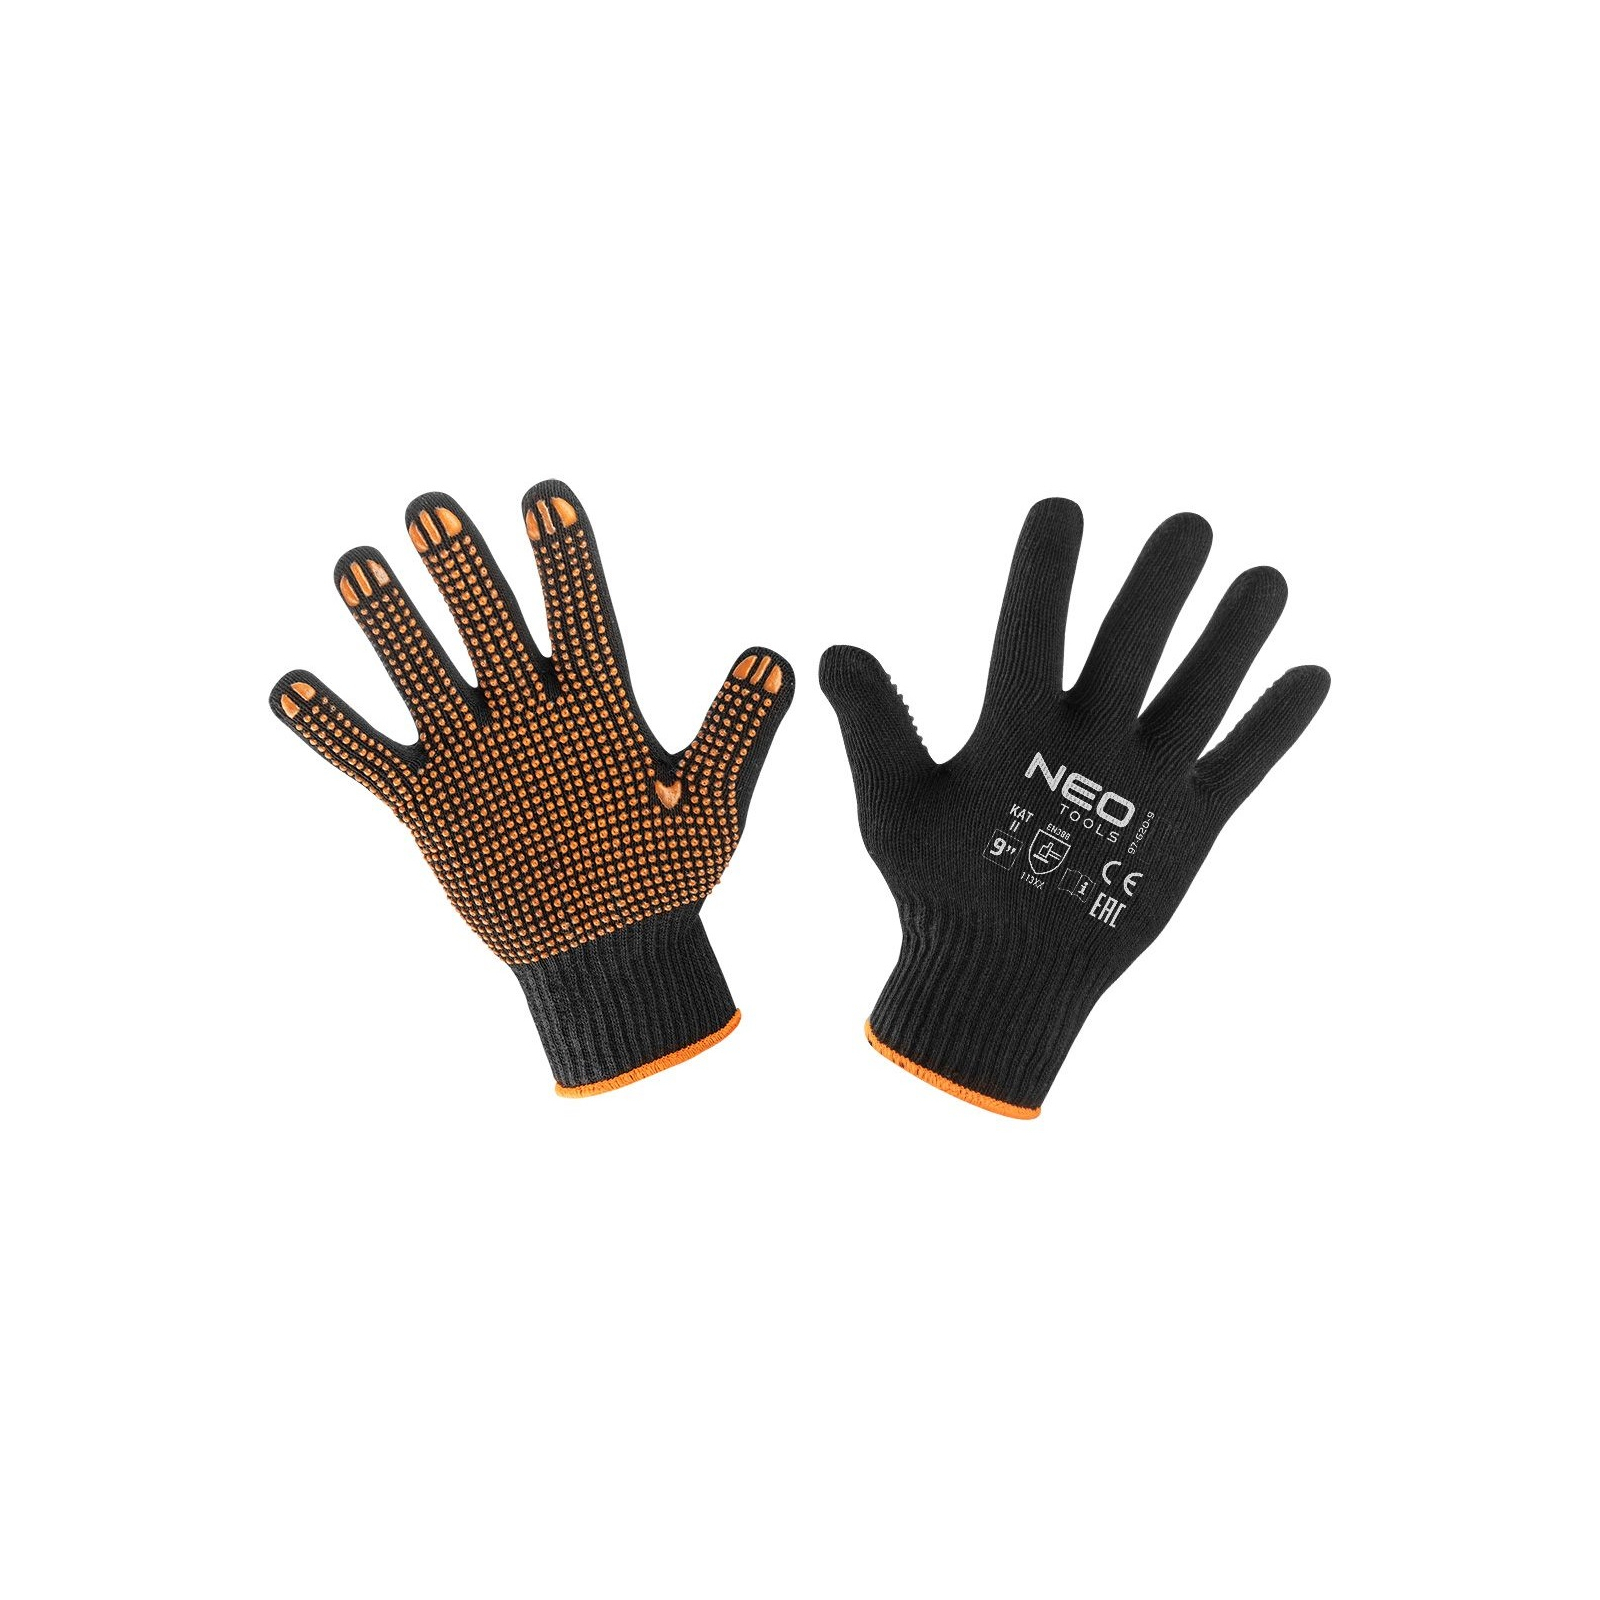 Захисні рукавиці Neo Tools бавовна та поліестер, пунктир, р. 9 (97-620-9)